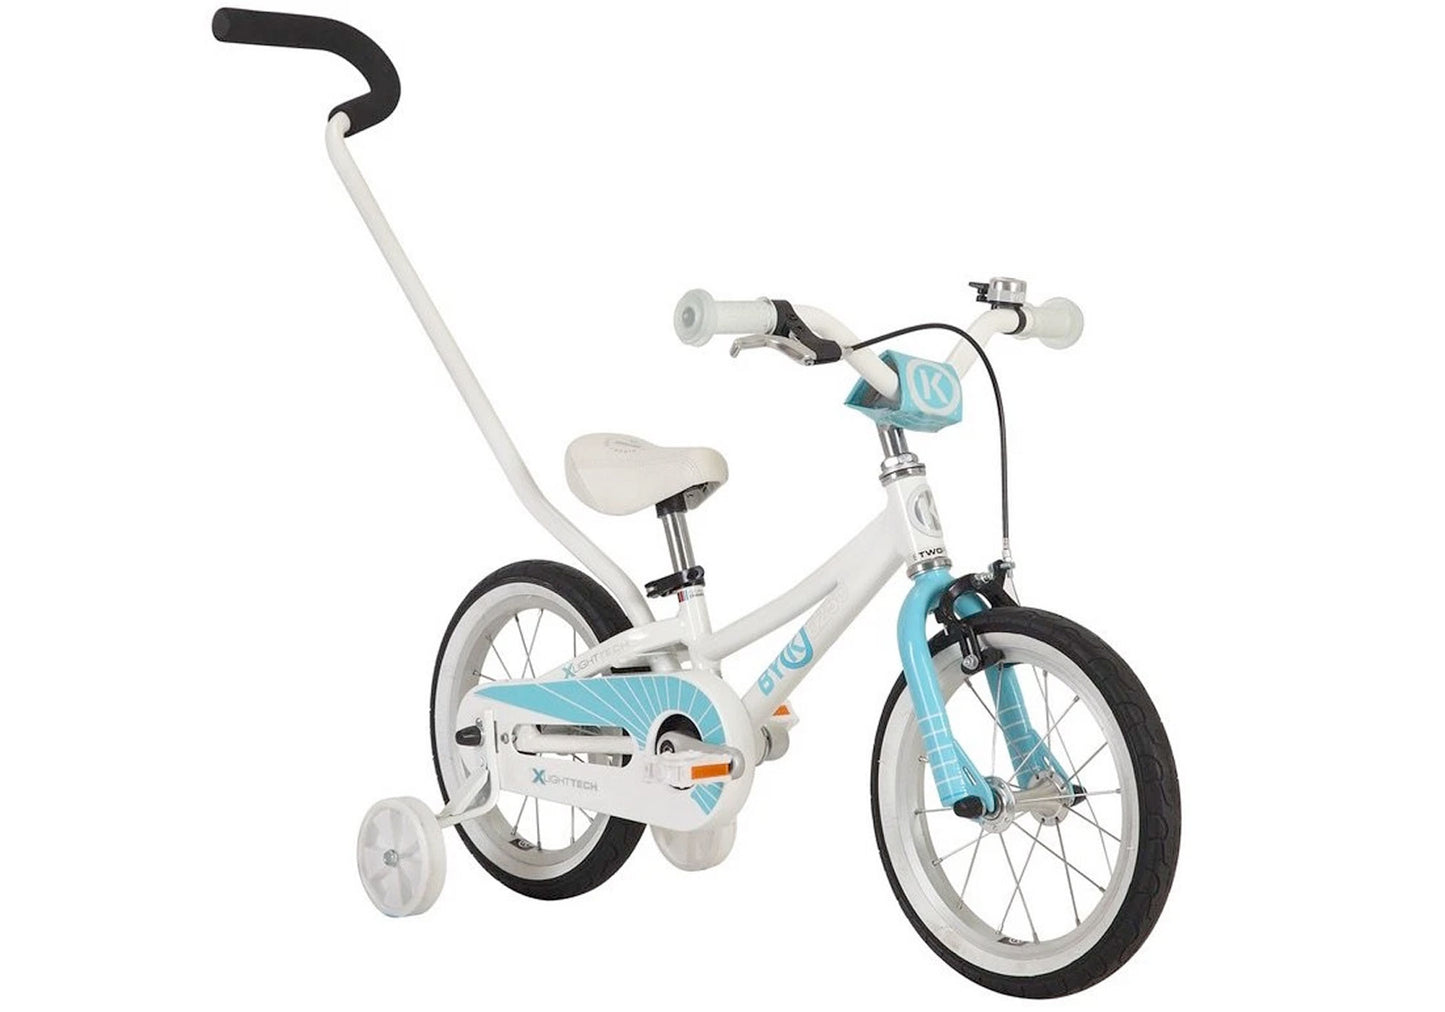 BYK E250 Girl's Bike, Light Blue - Rider height: 85-102cm